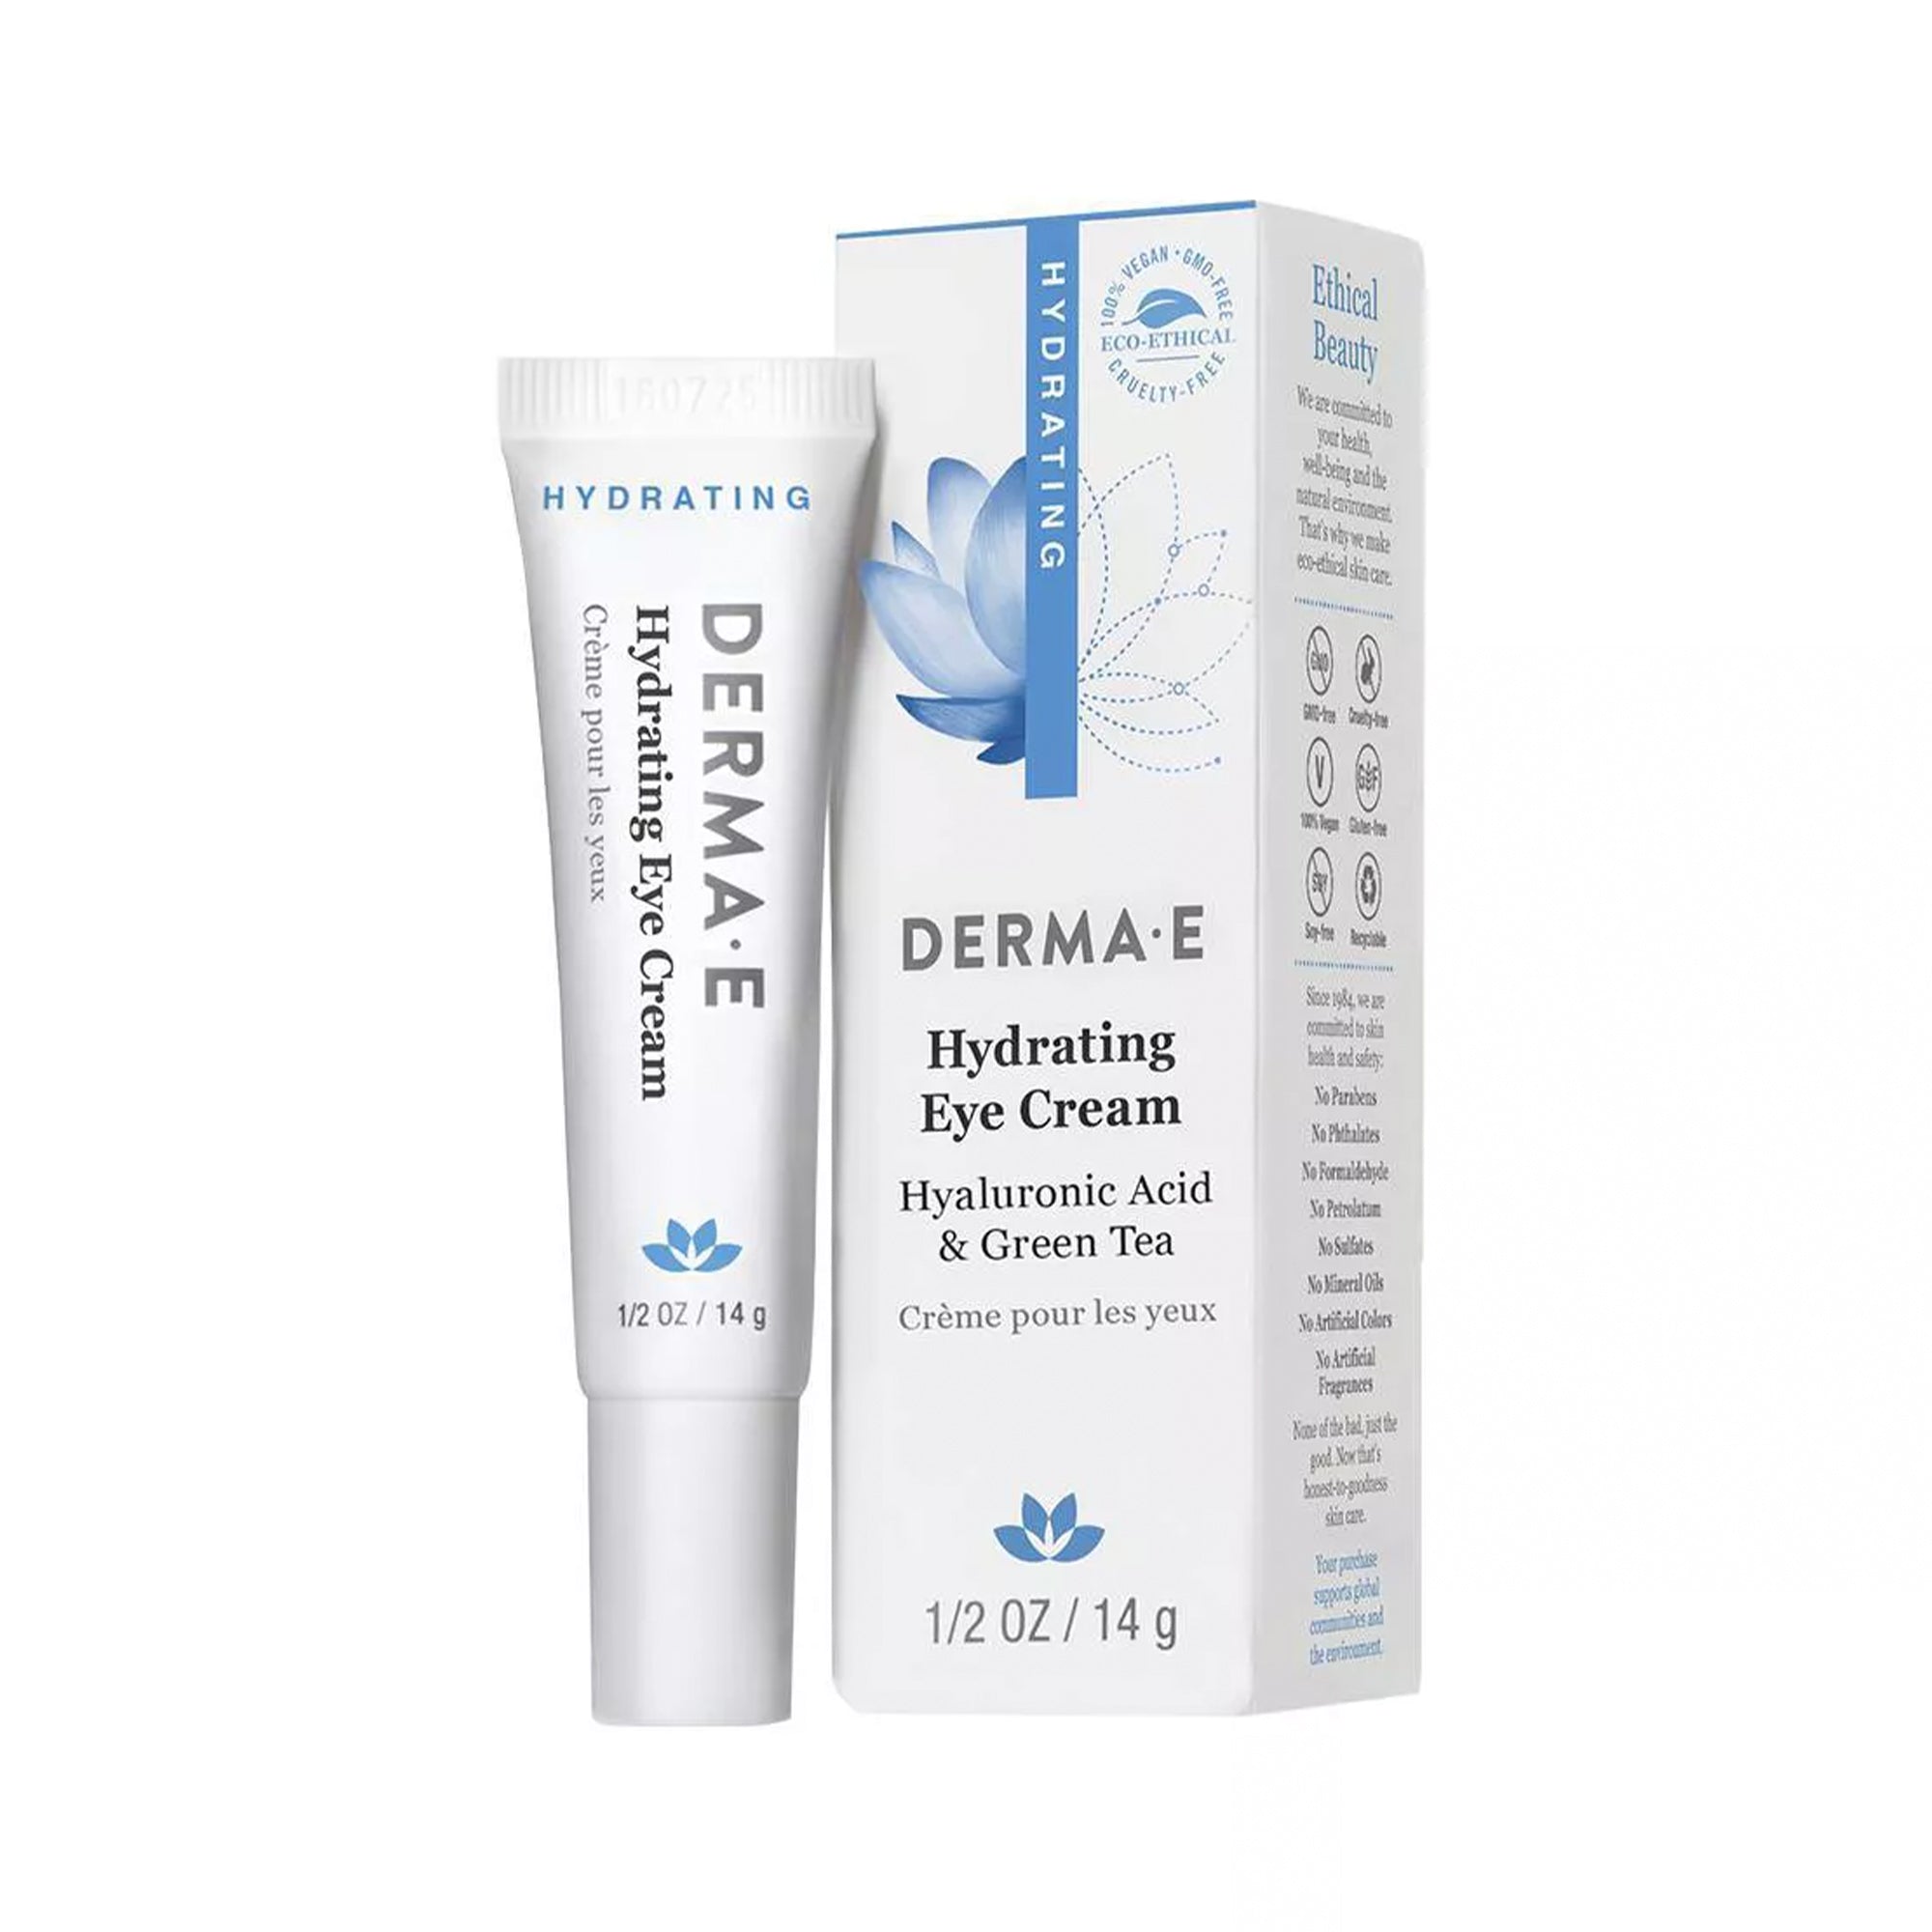 Derma-e Hydrating Eye Cream, 0.5oz